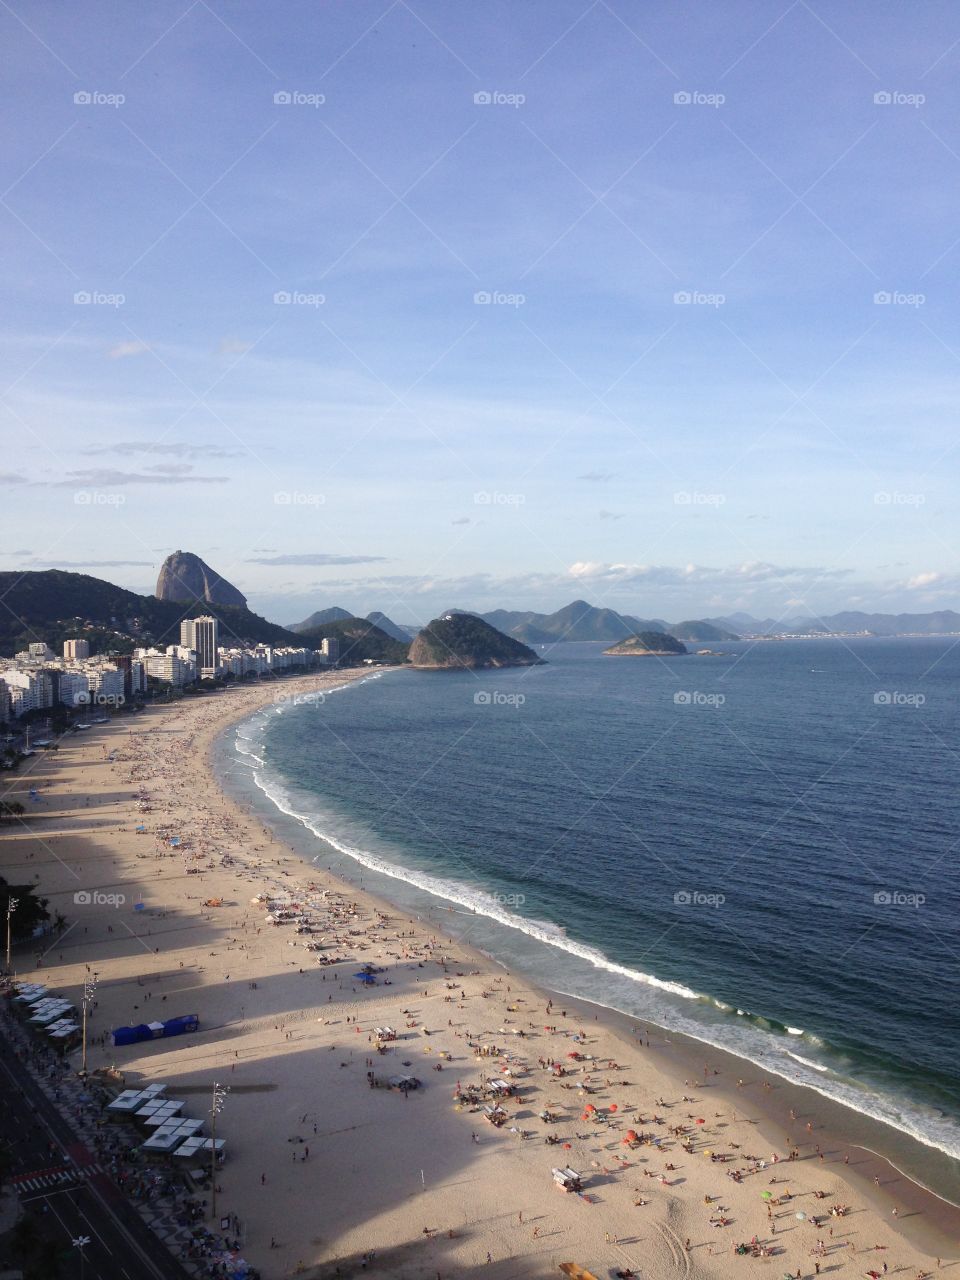 Sunny days in Rio